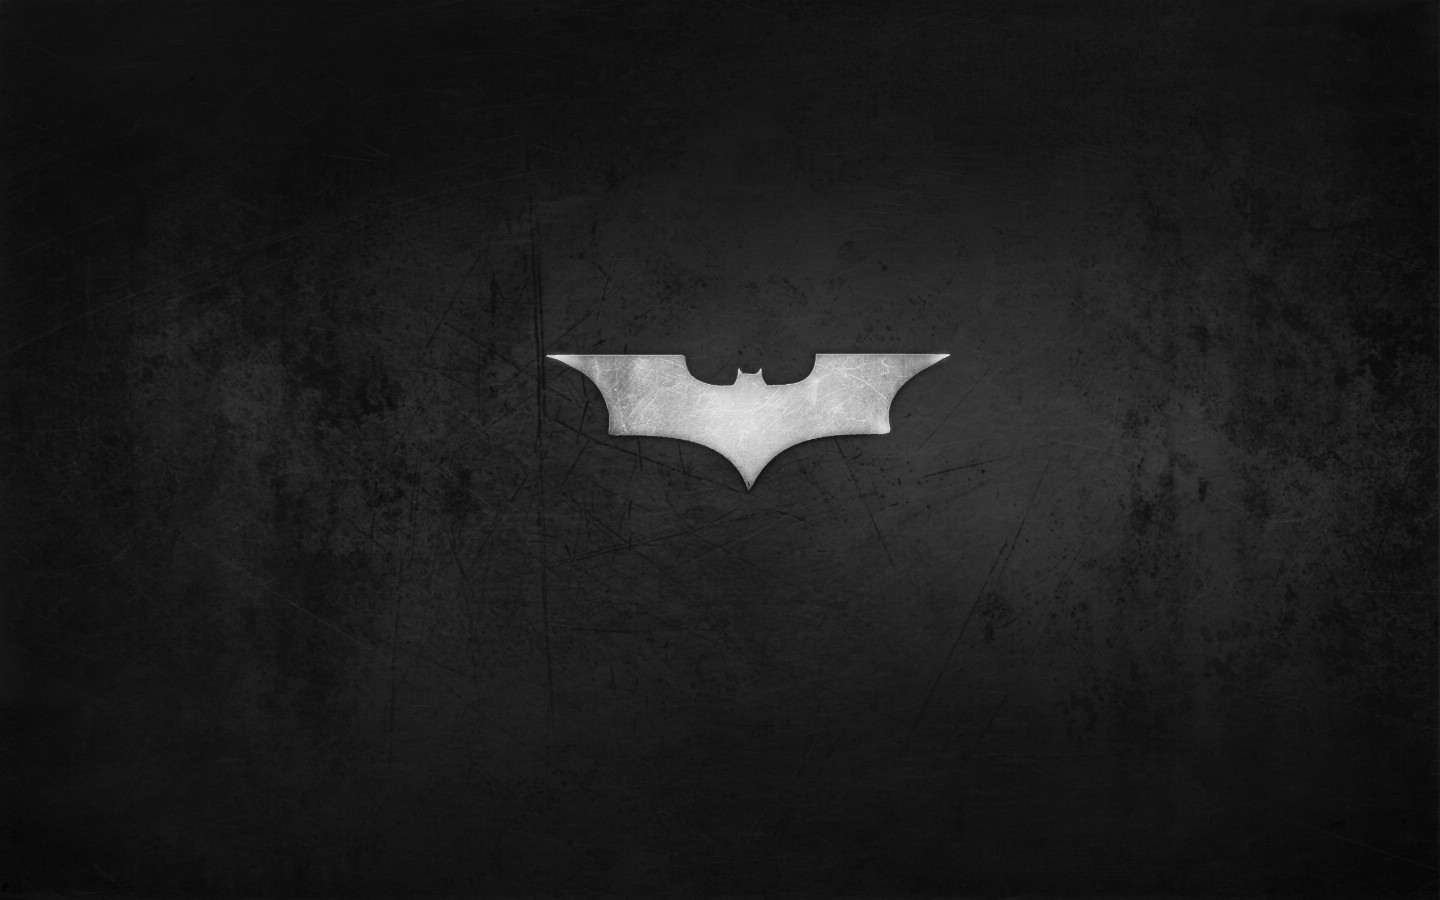 壁纸1440x900蝙蝠侠 宽屏 桌酷精选一图 壁纸5壁纸 蝙蝠侠（宽屏）精壁纸 蝙蝠侠（宽屏）精图片 蝙蝠侠（宽屏）精素材 精选壁纸 精选图库 精选图片素材桌面壁纸